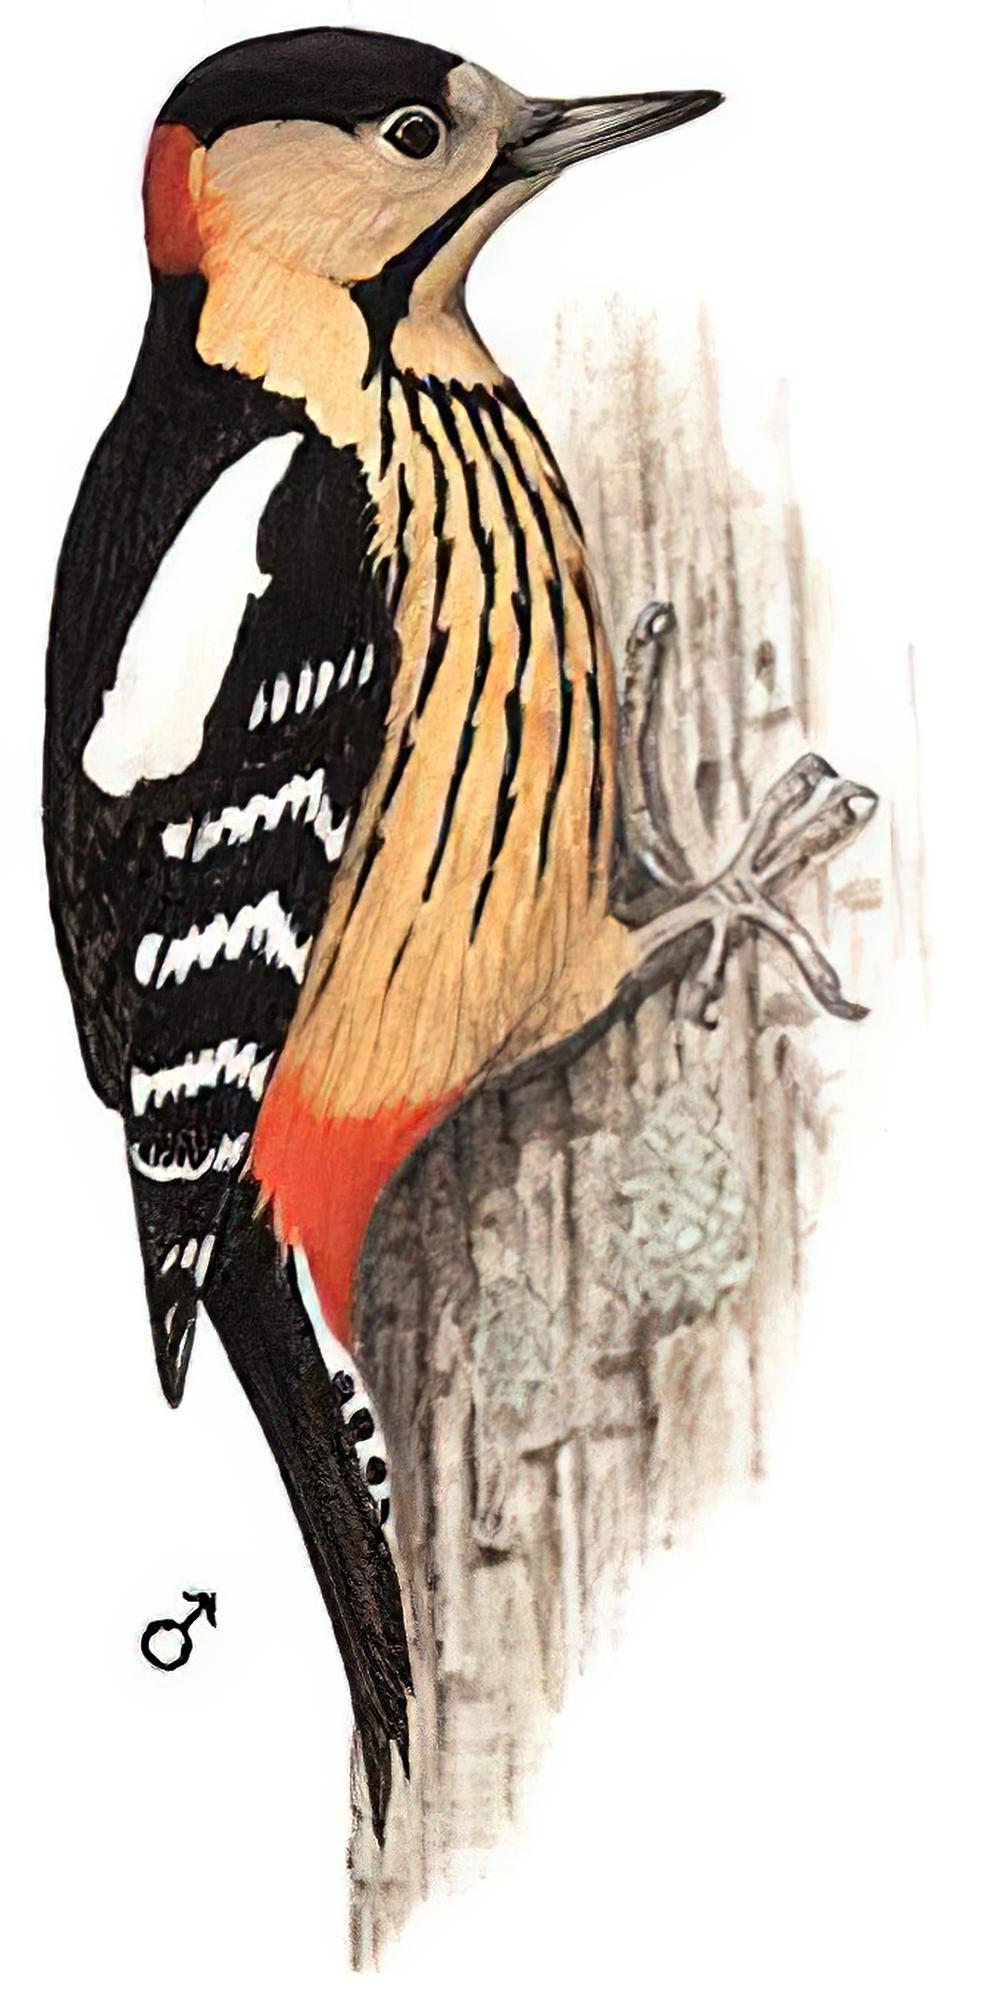 黄颈啄木鸟 / Darjeeling Woodpecker / Dendrocopos darjellensis